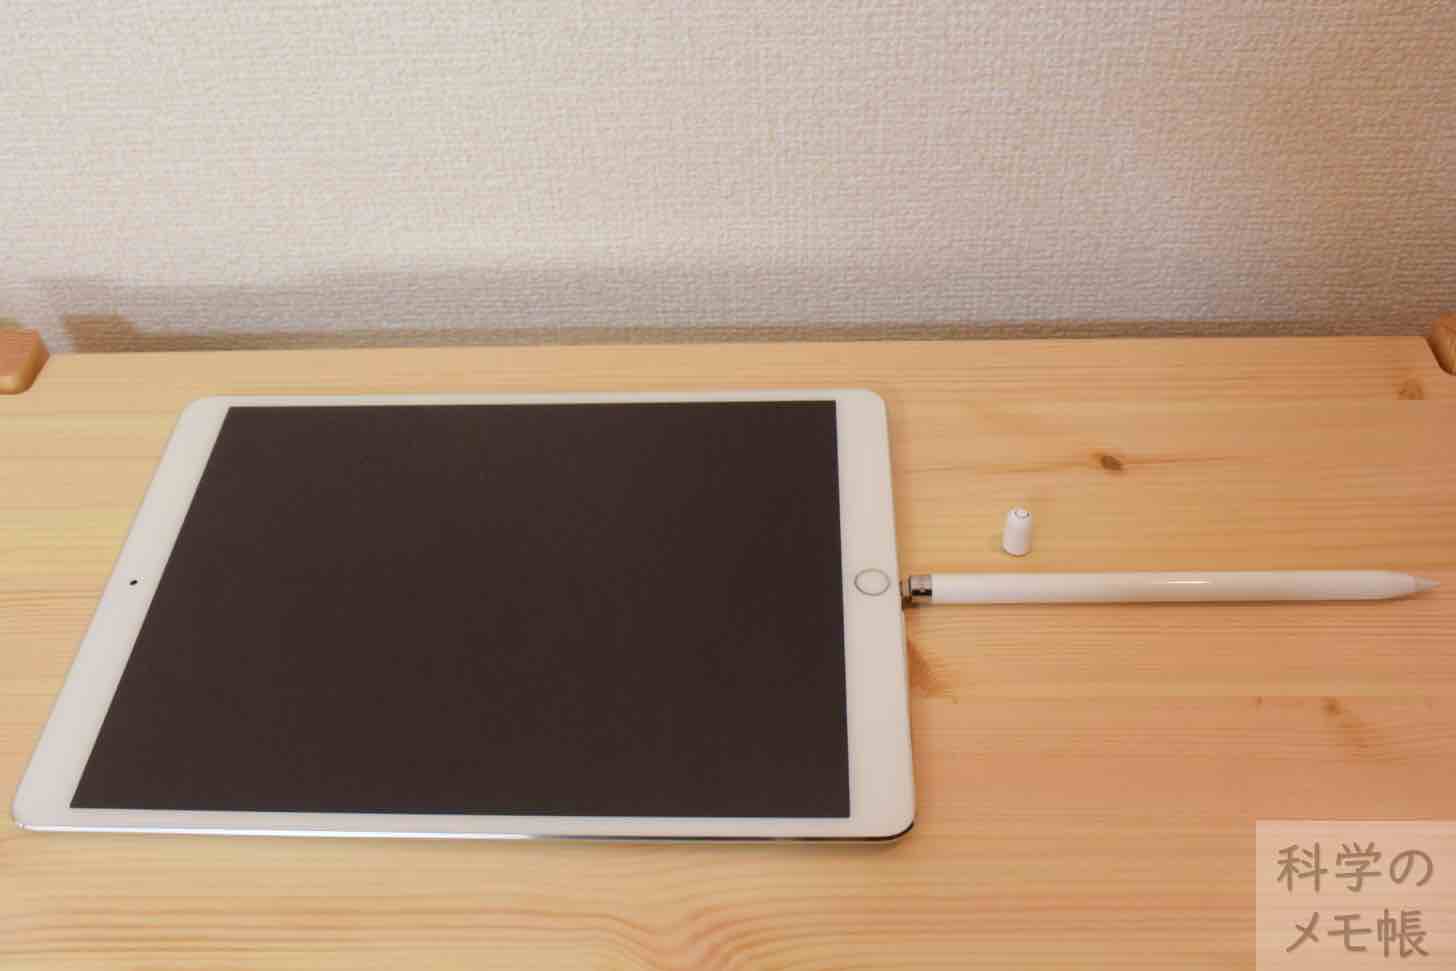 【iPad Pro 11インチ】研究者が選ぶiPad三種の神器【開封の儀】 | 科学のメモ帳